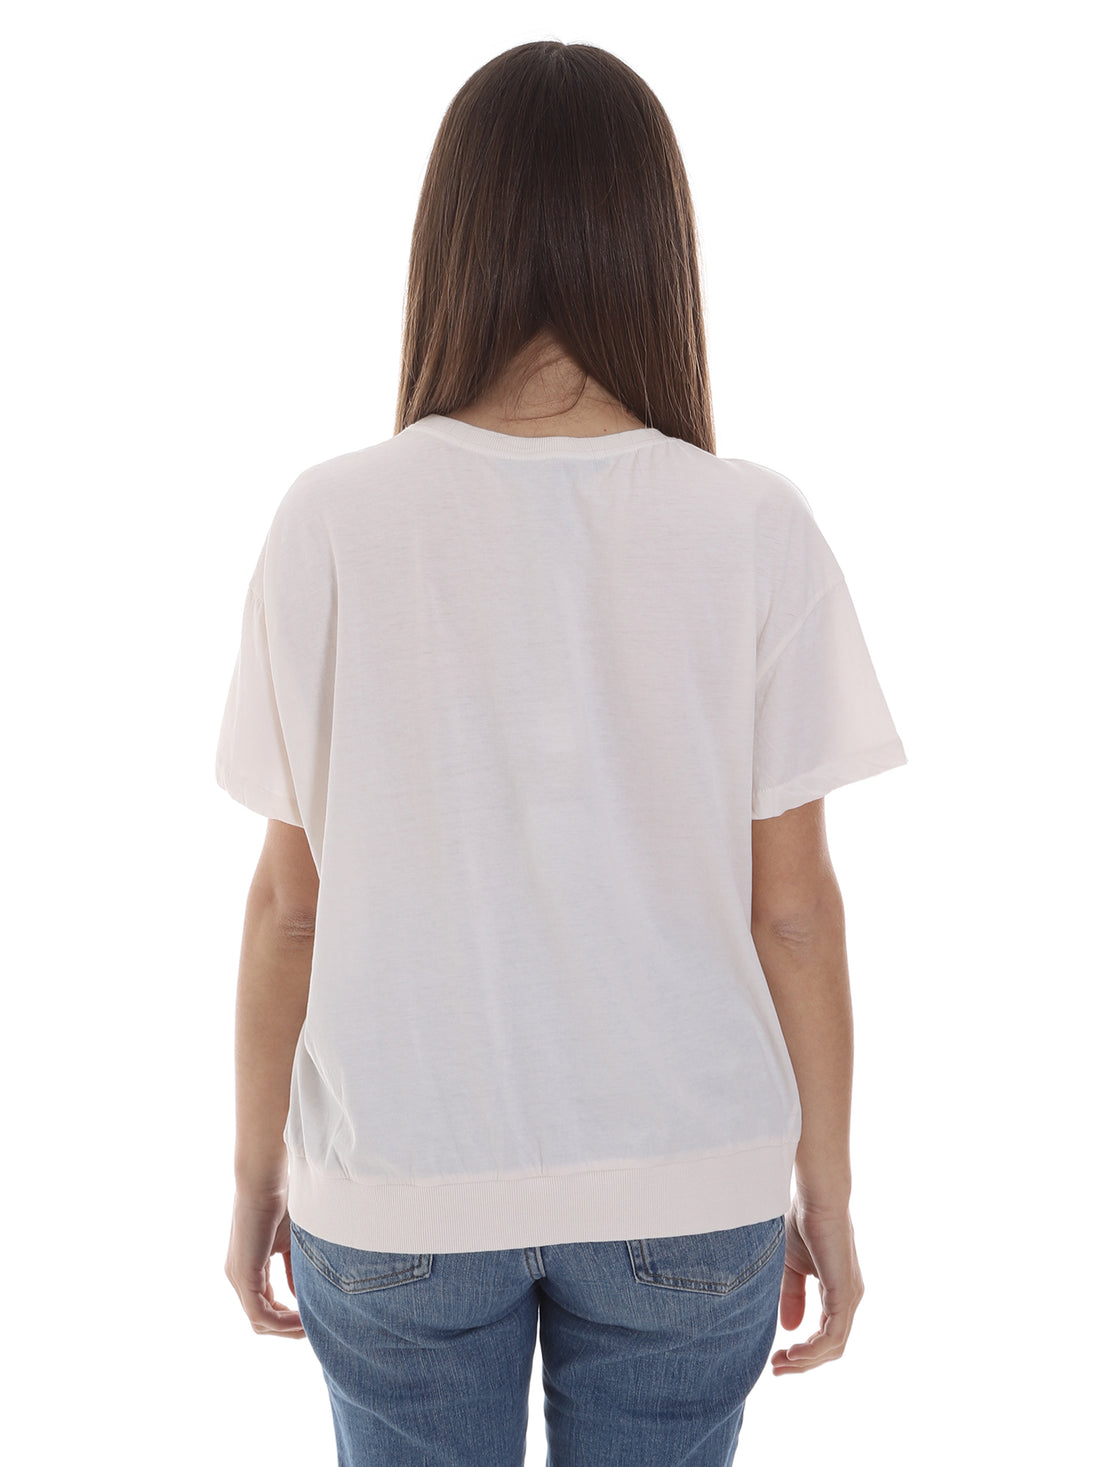 T-shirt Bianco Alessia Santi